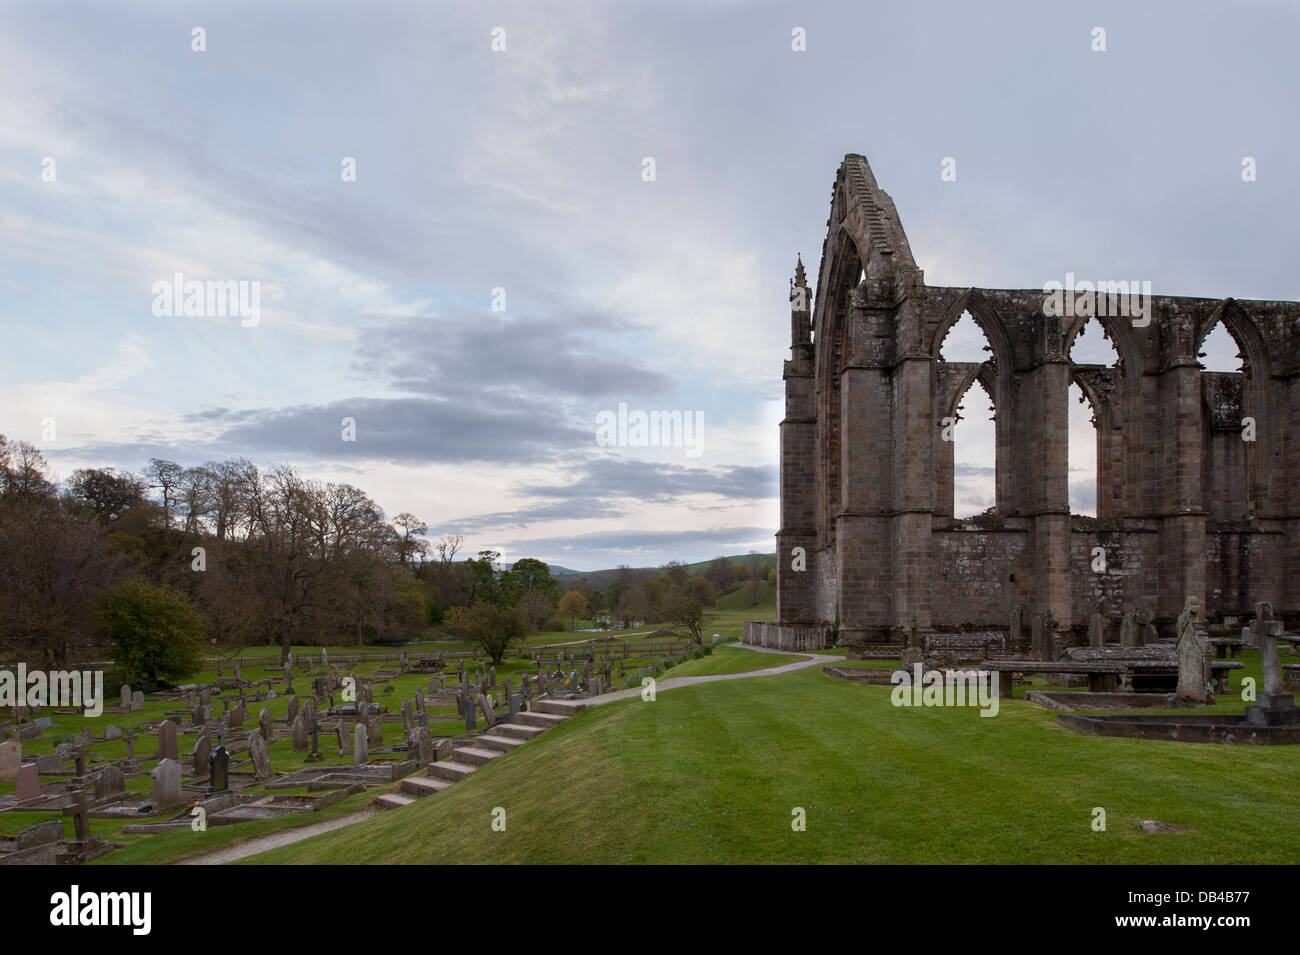 Blick von Norden der alten, malerischen monastischen Ruinen von Bolton Abbey & Friedhof Grabsteine, in der malerischen Landschaft - Yorkshire Dales, England, UK. Stockfoto